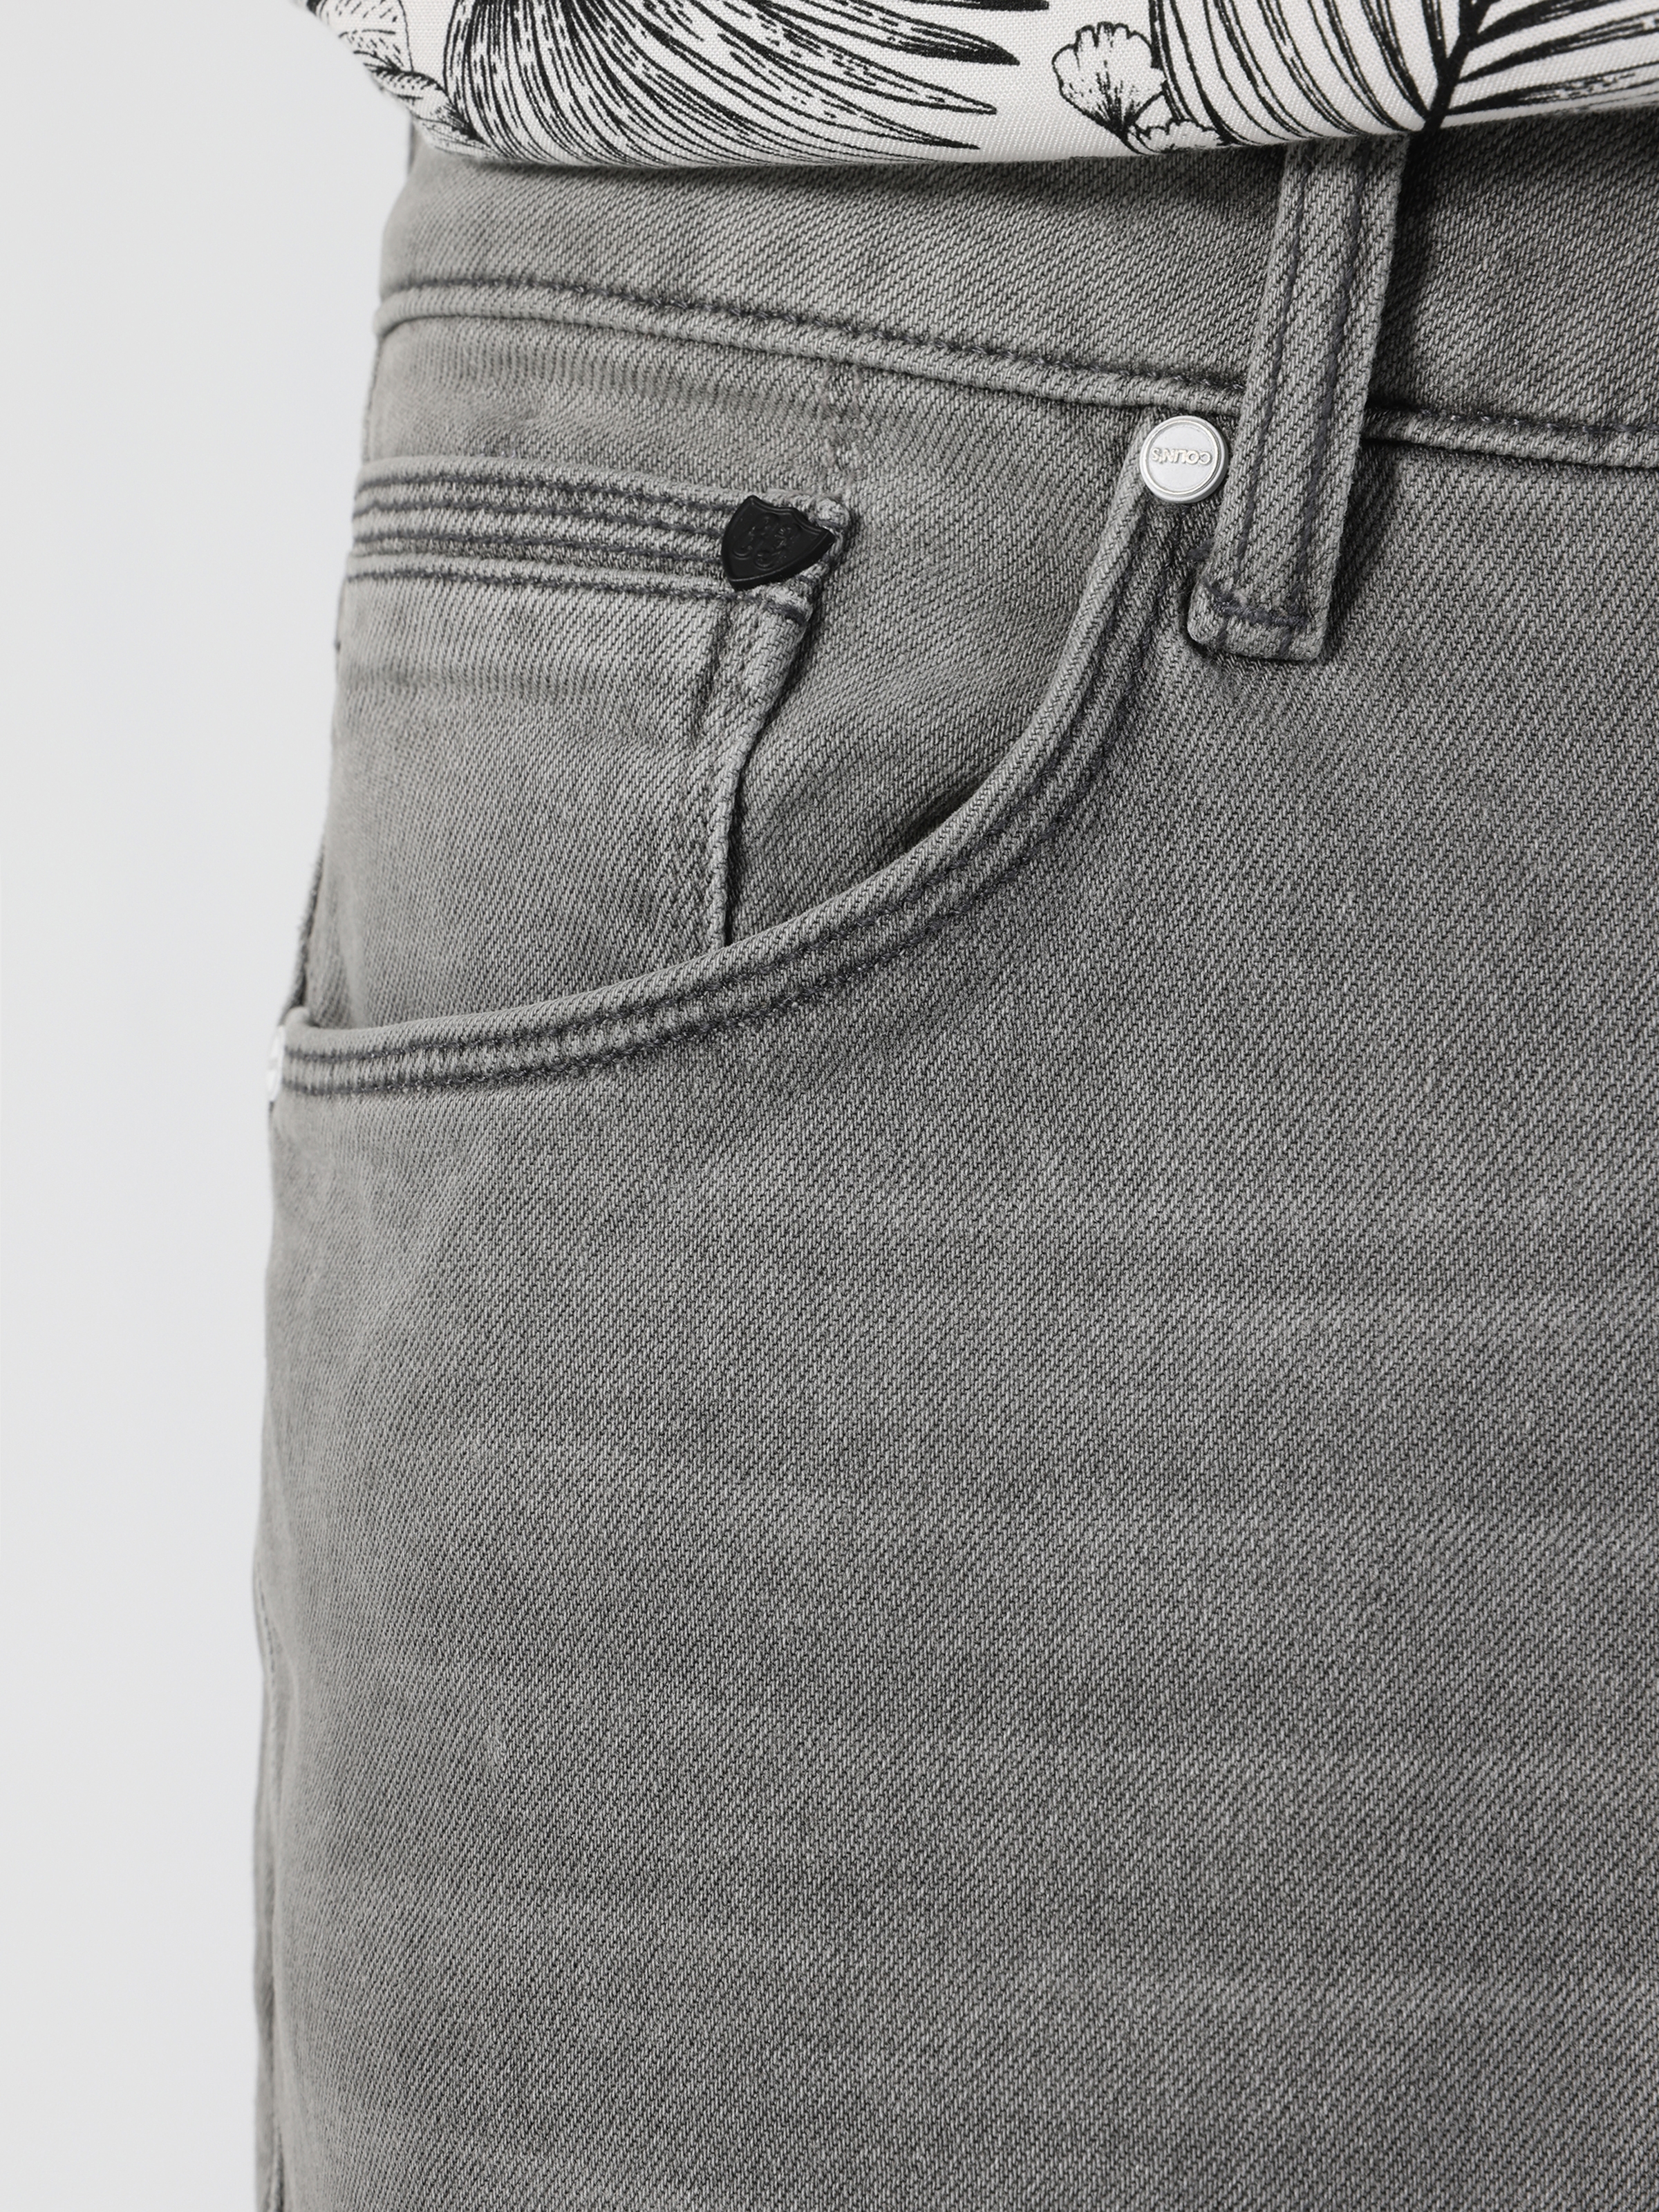 Afficher les détails de 067 Jack Coupe Normale Taille Normale Jambe Slim Pantalon Homme Gris